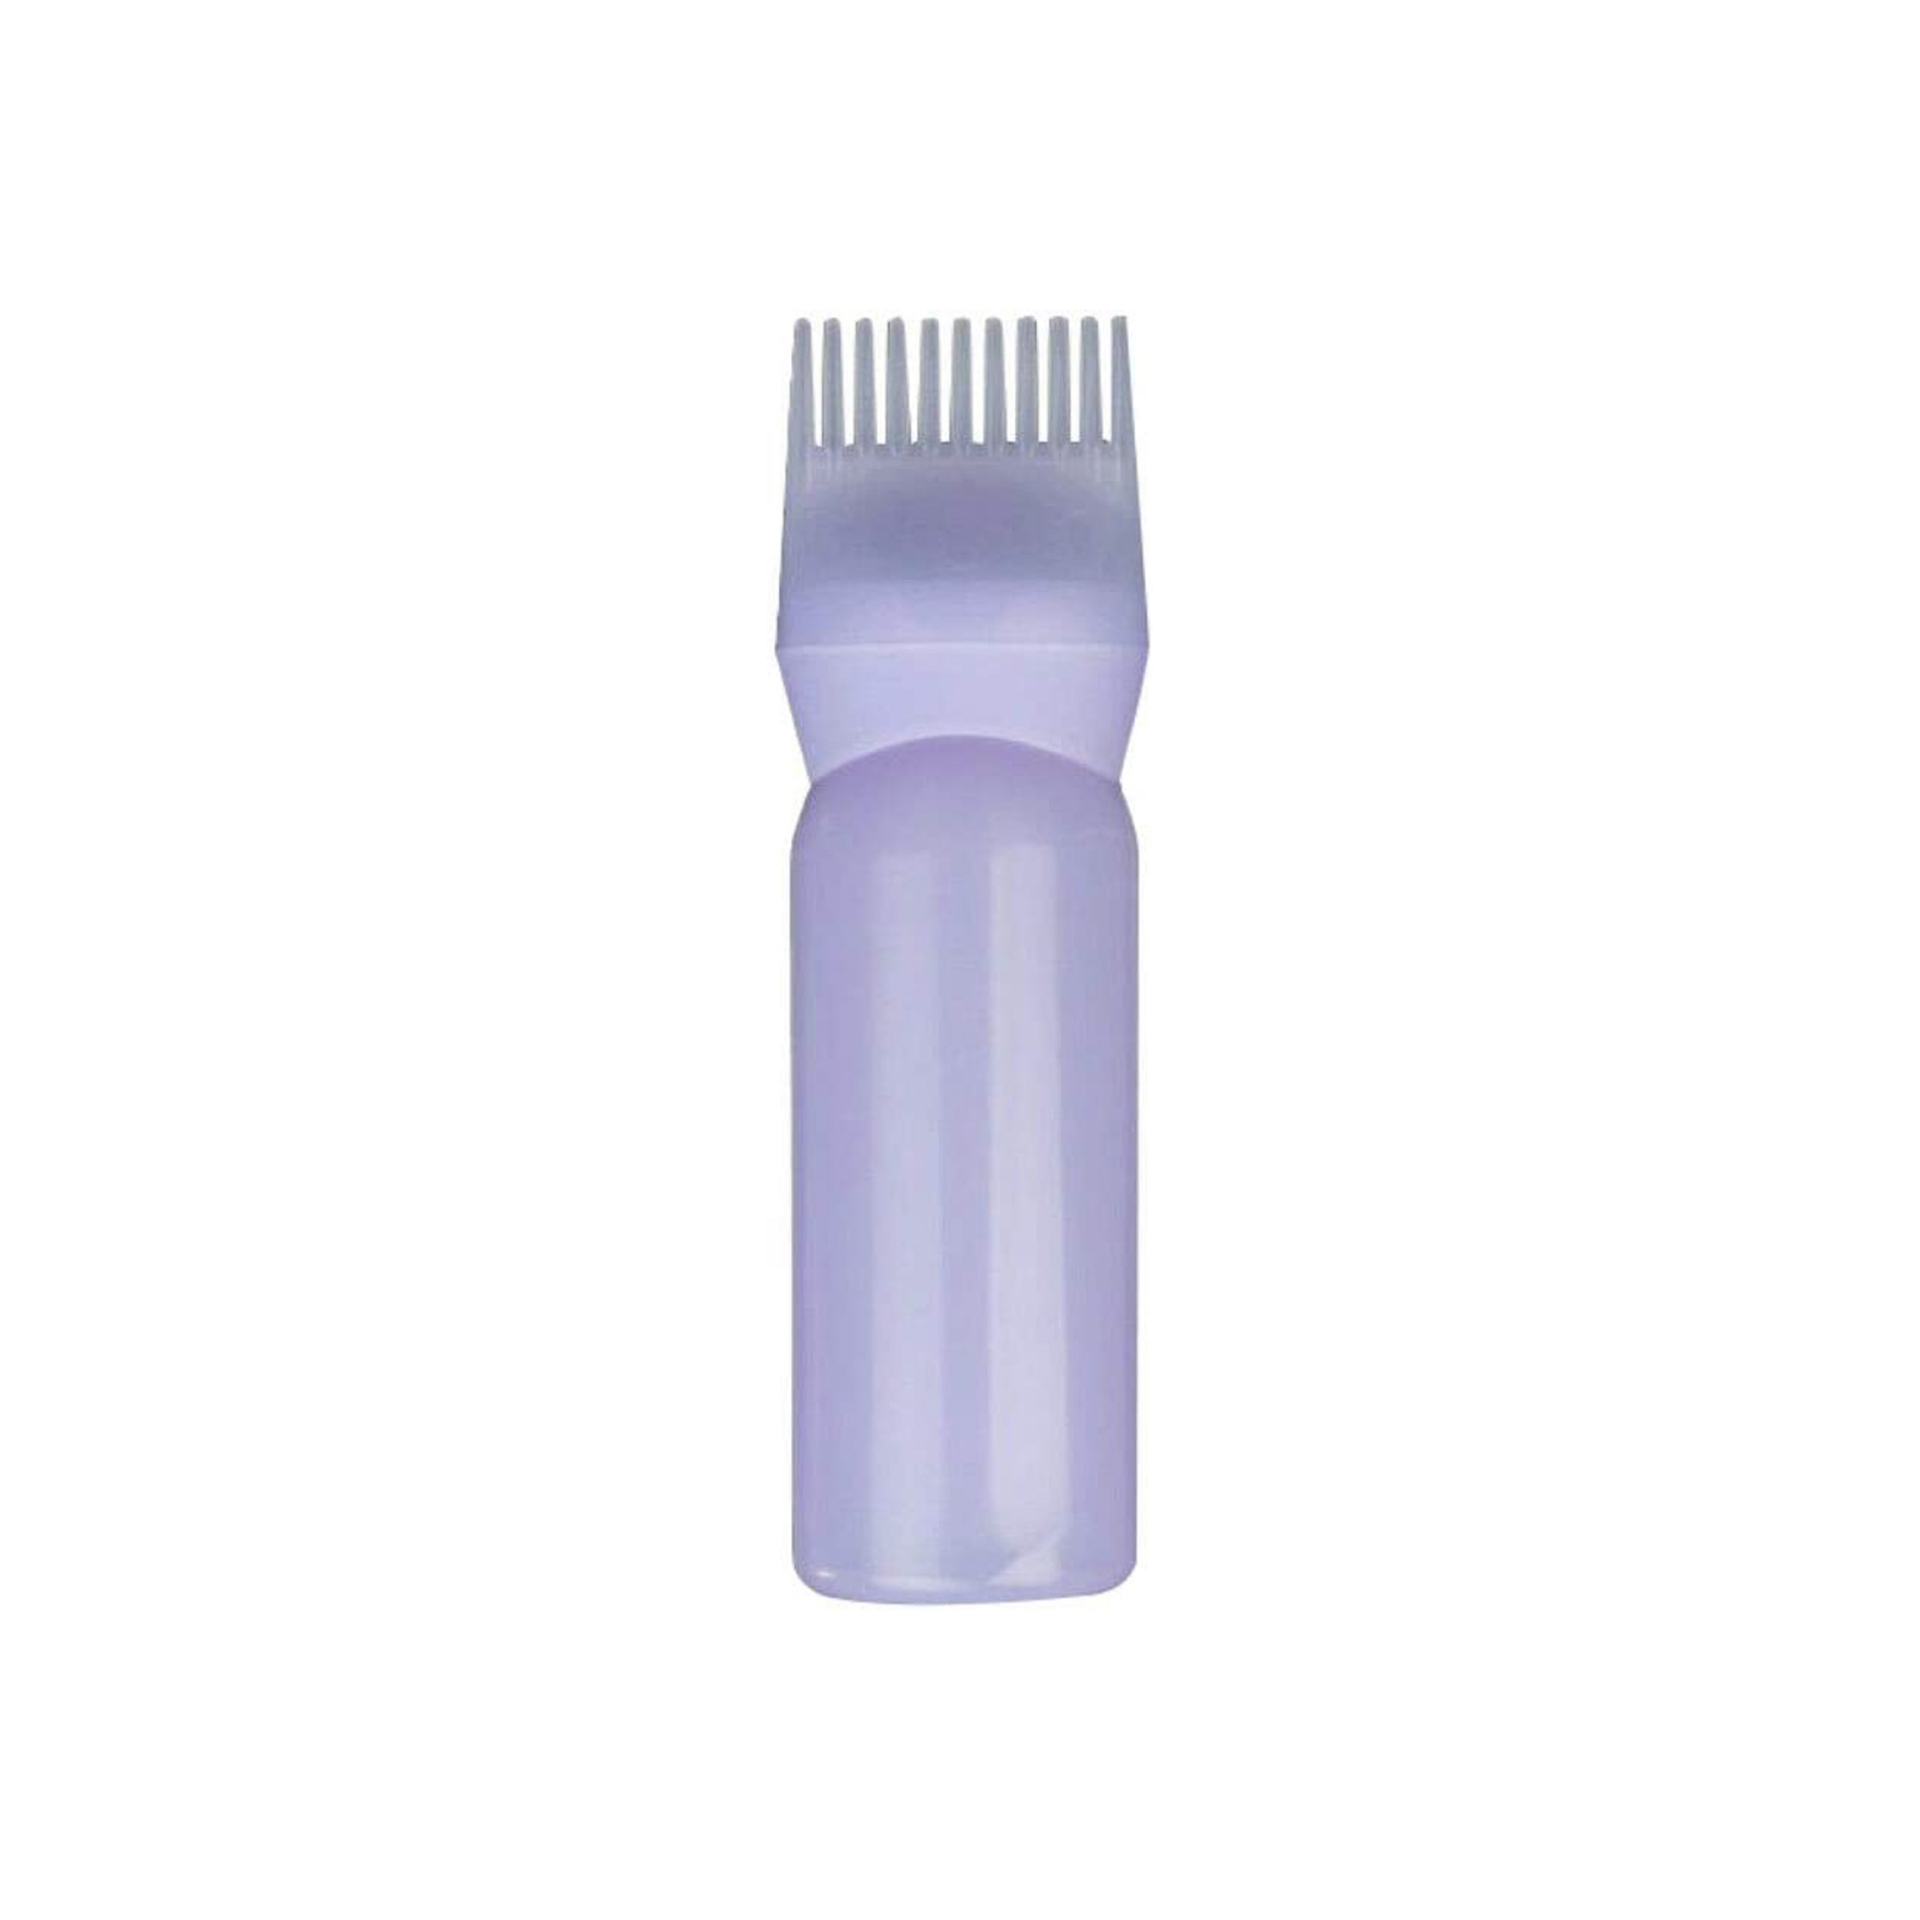 زجاجة برأس فرشاة توزيع لصبغة الشعر لصالونات التجميل - ارجواني